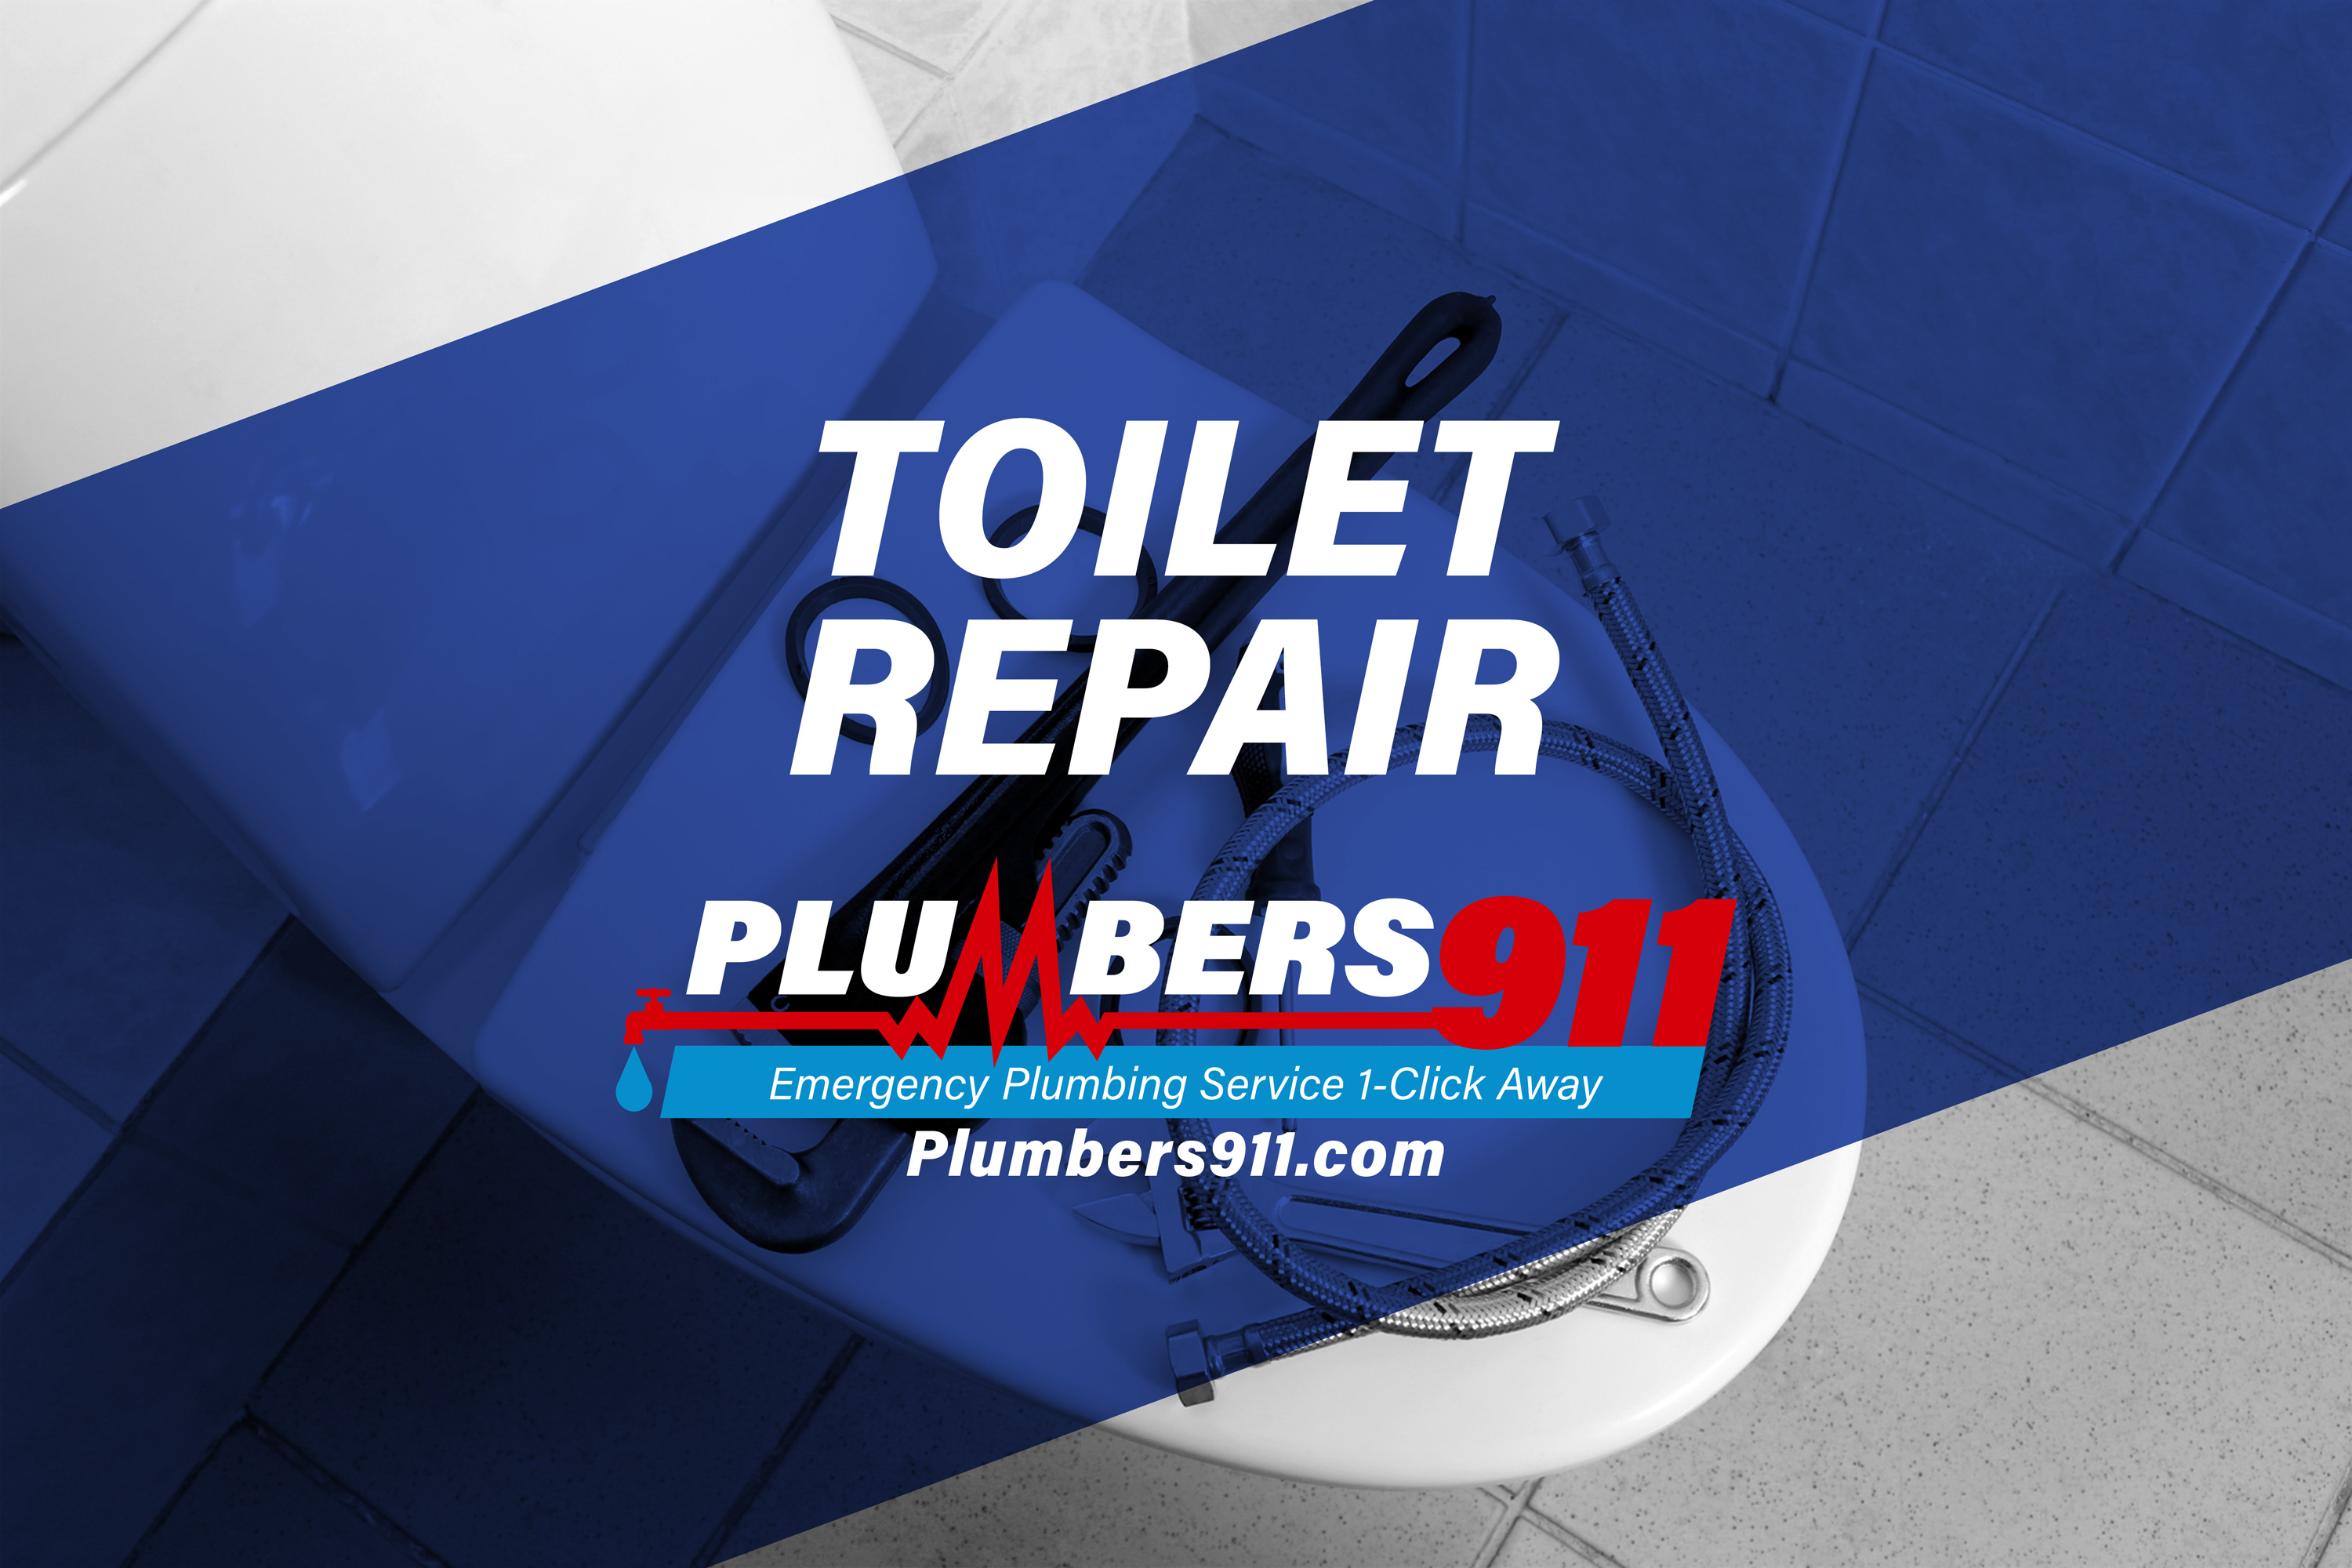 Plumbers 911 - Emergency Plumbing Services - Toilet Repair